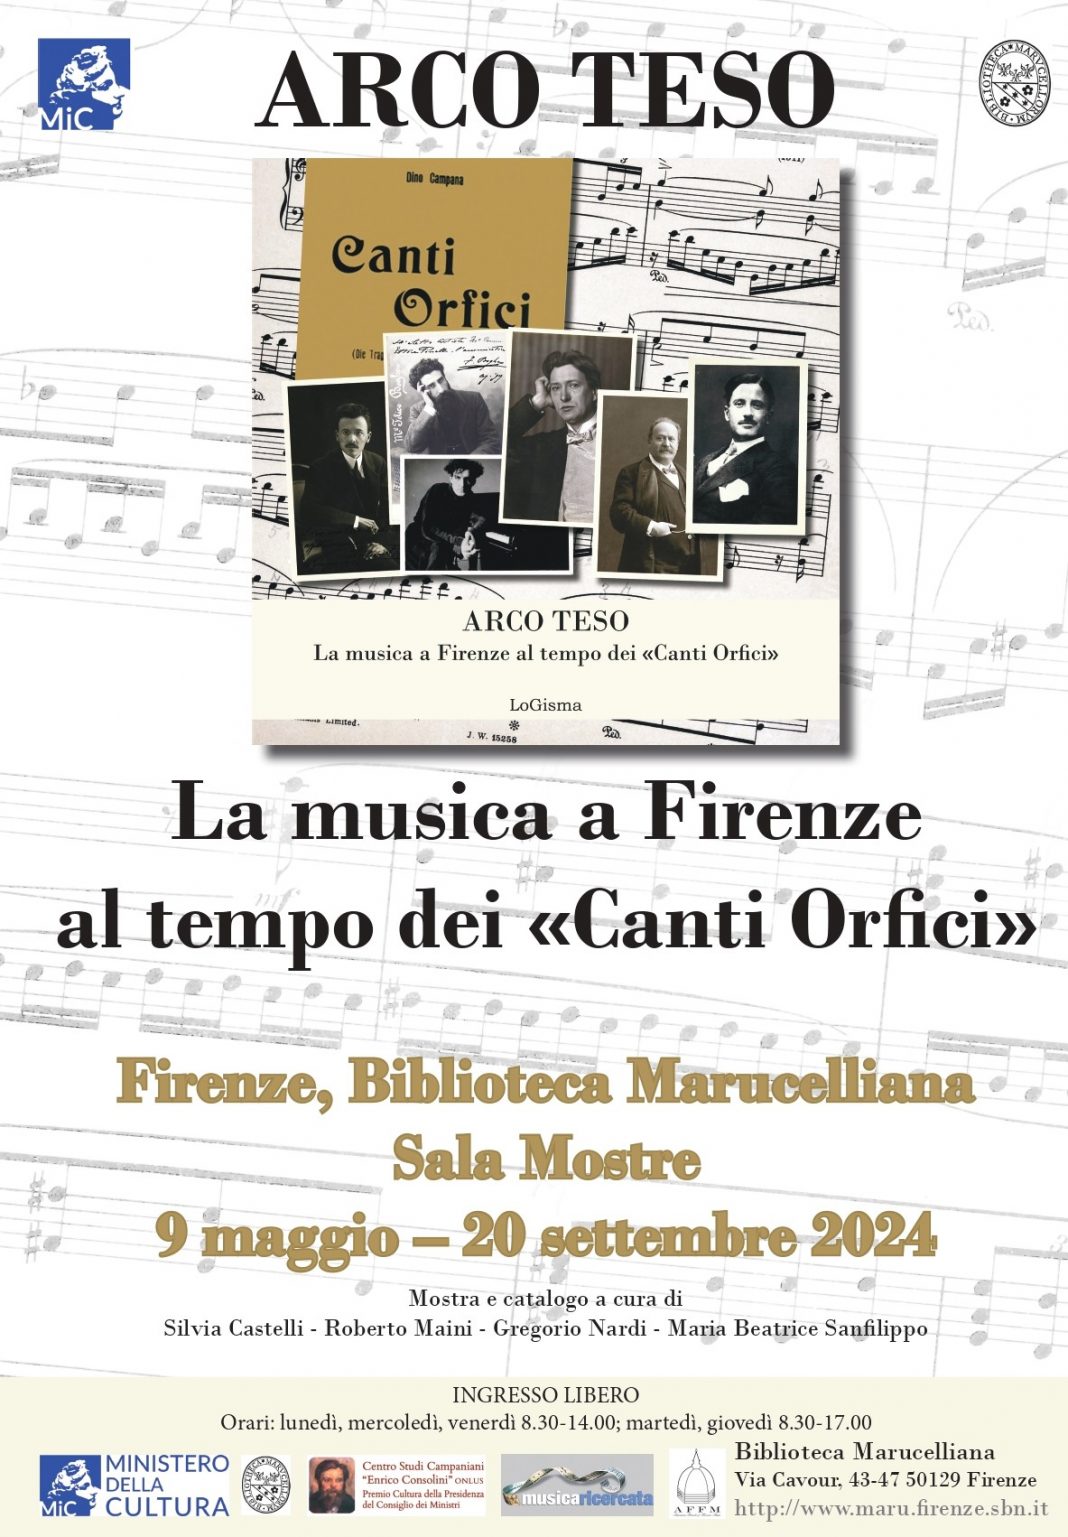 Arco Teso – La musica a Firenze al tempo dei «Canti Orfici»https://www.exibart.com/repository/media/formidable/11/img/6d9/Locandina-Arco-Teso-1068x1537.jpg